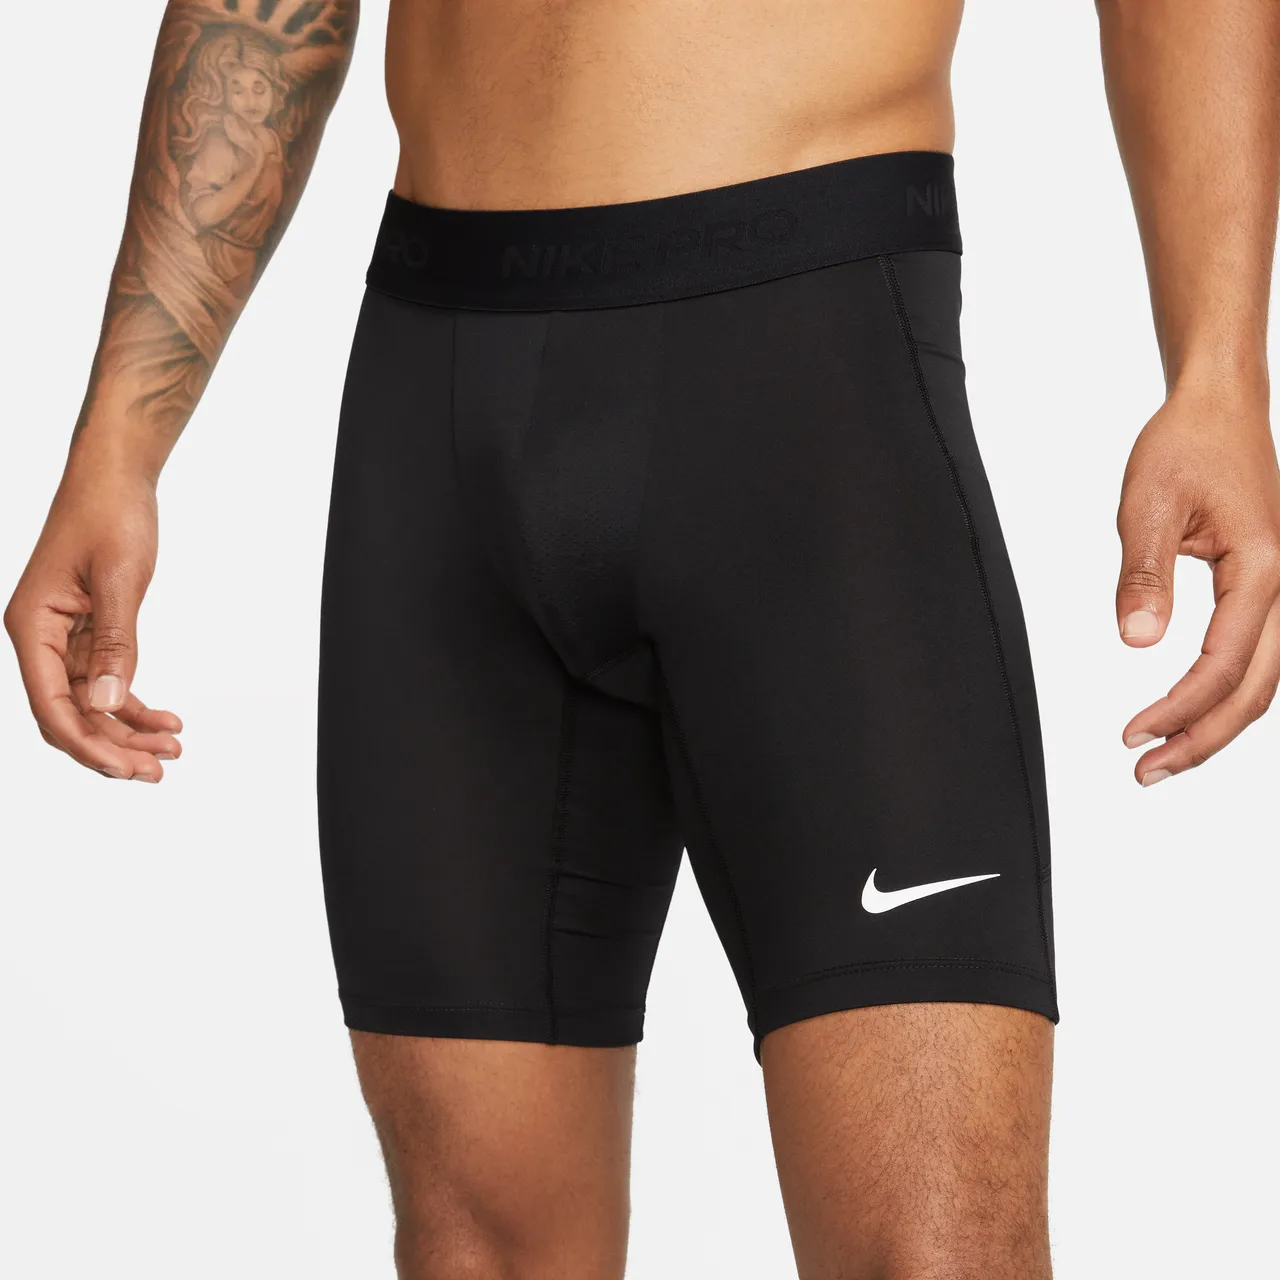 Nike Pro Dri-FIT lange fitnesshorts voor heren - Zwart